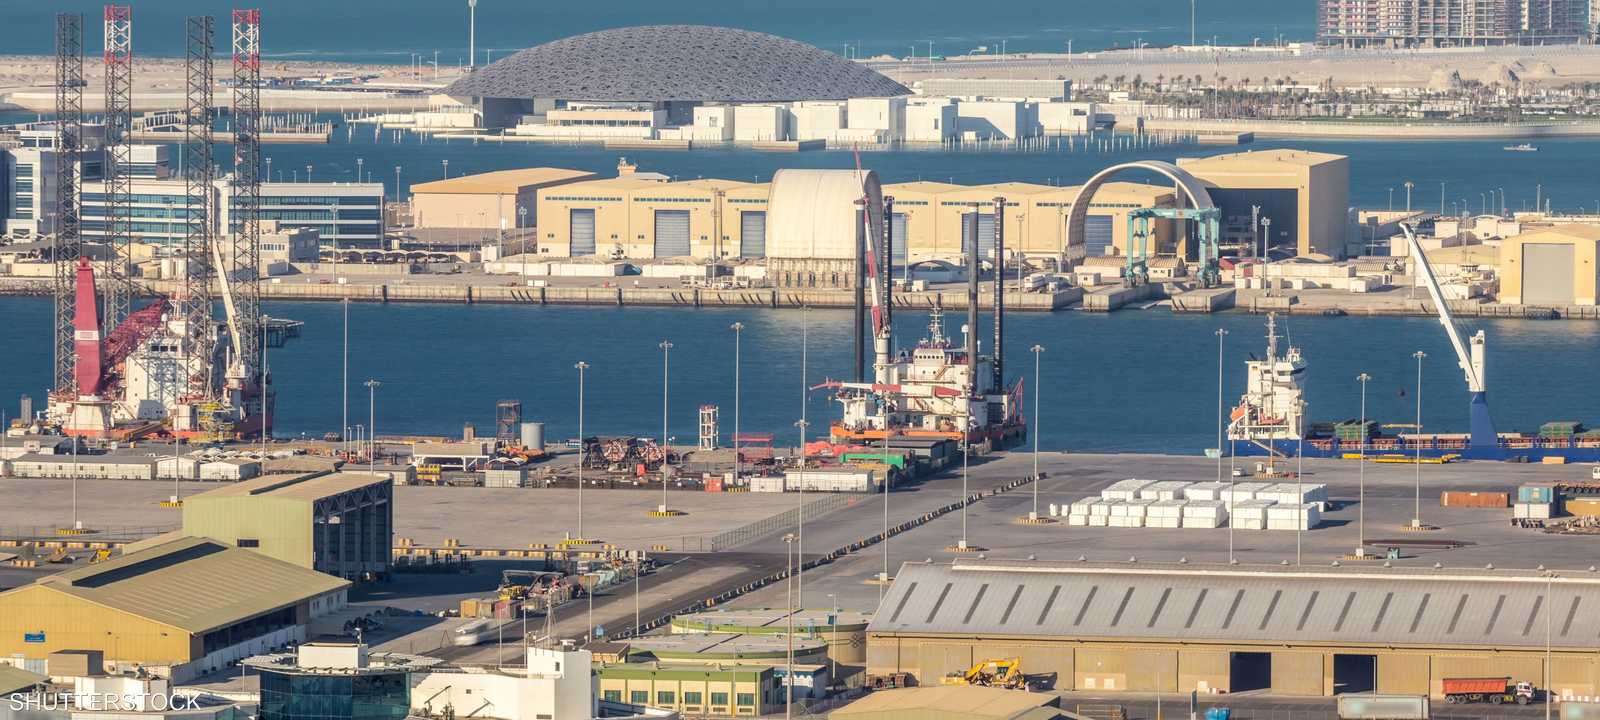 سفينة شحن كبيرة في الميناء - أبوظبي - الإمارات